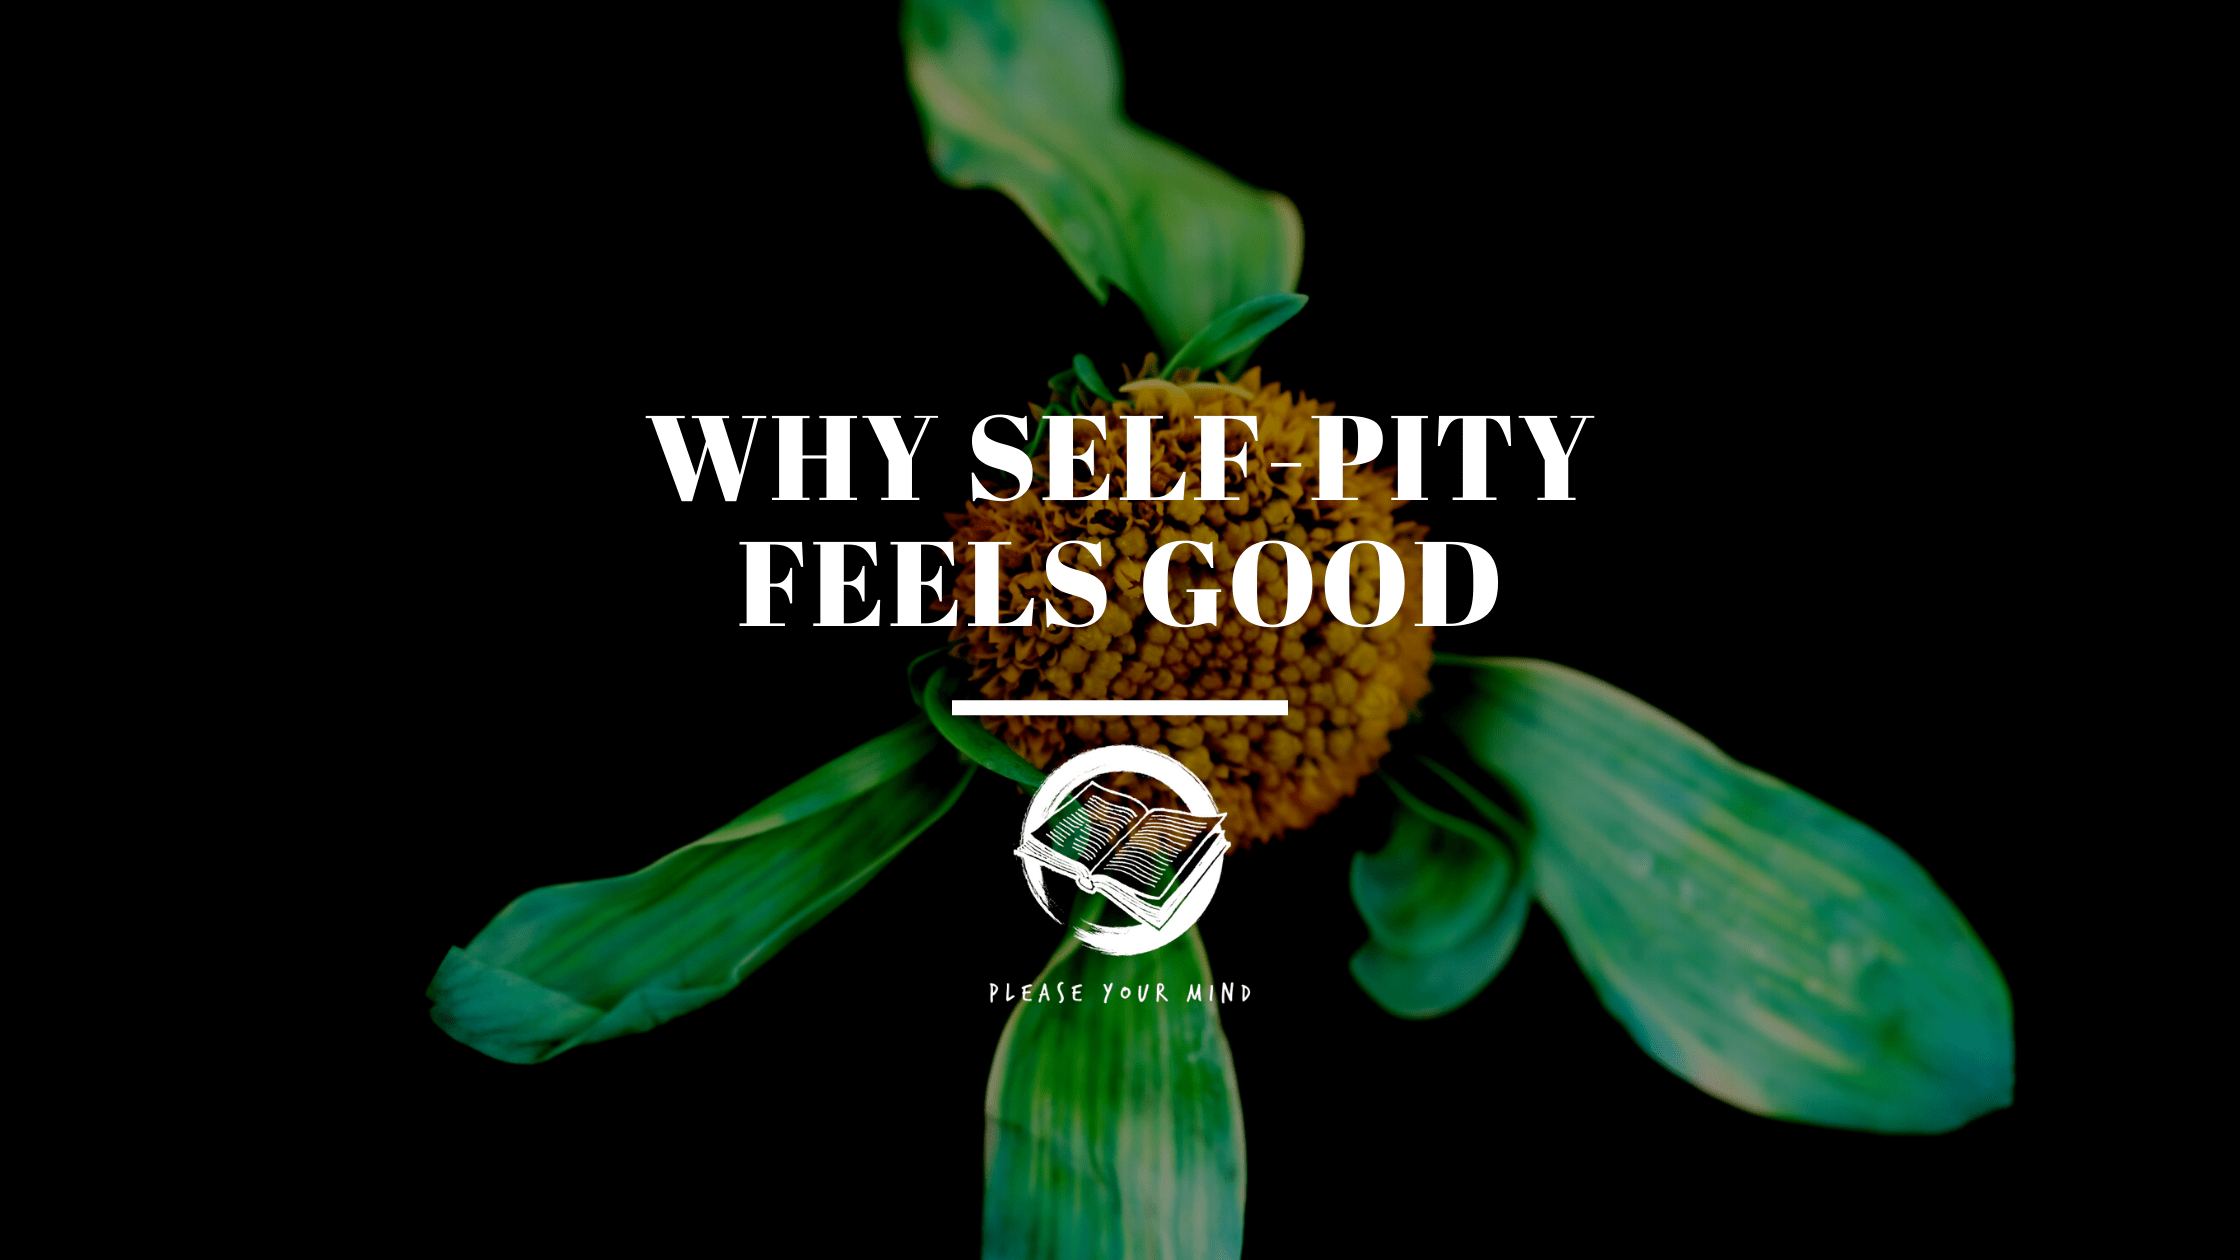 Why Self-Pity feels good